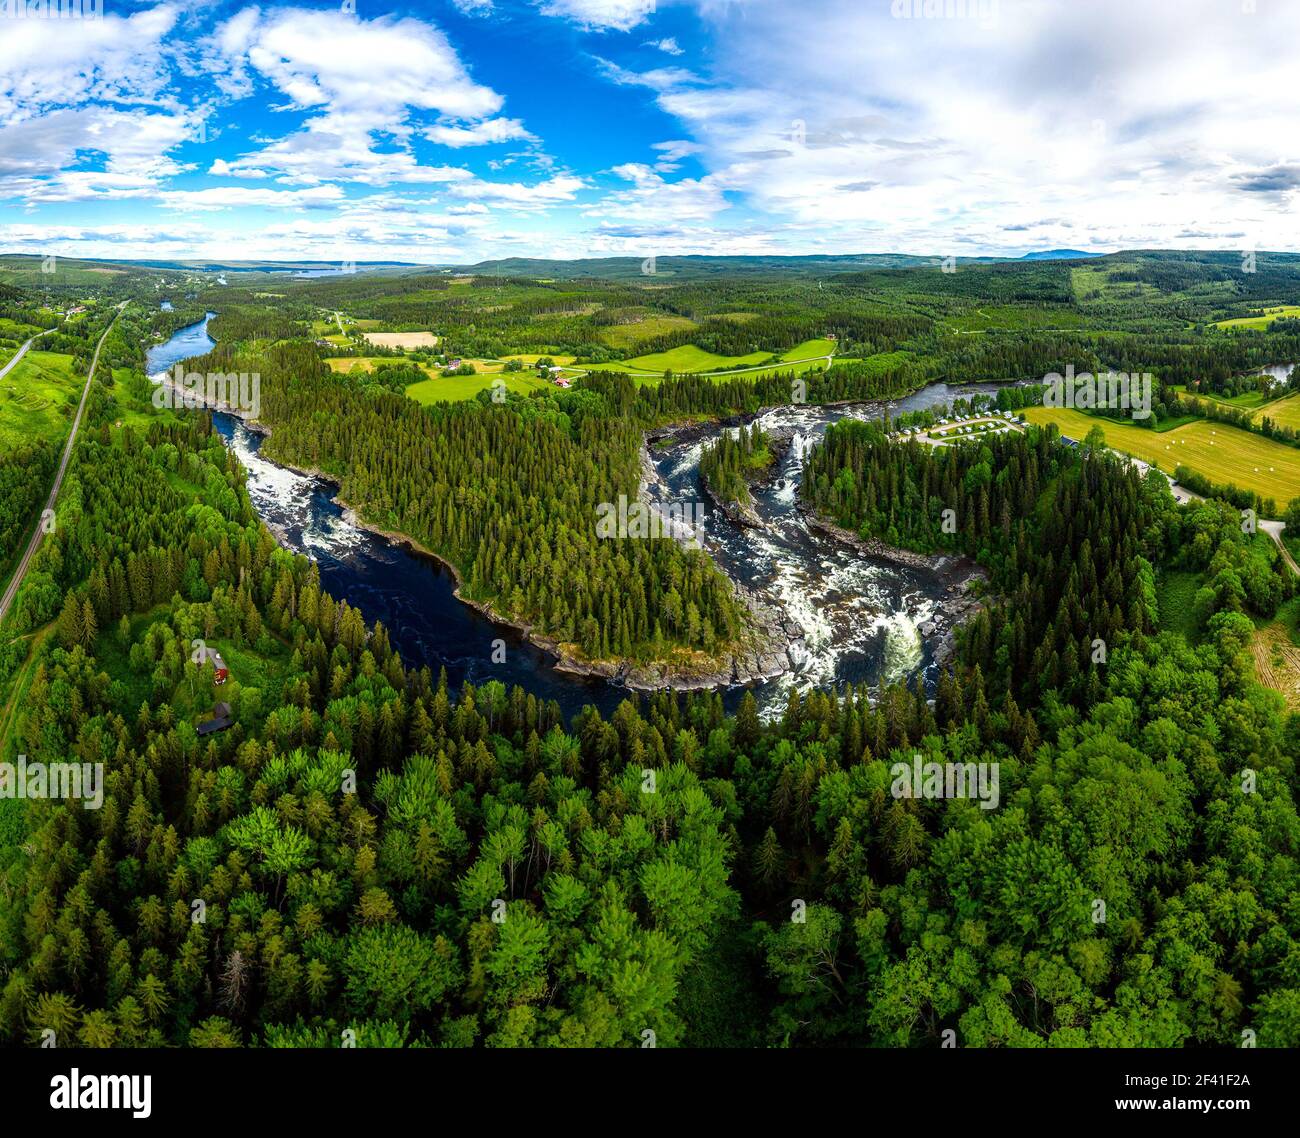 Ristafallet waterfall dans la partie ouest de Jamtland est répertorié comme l'un des plus belles chutes d'eau en Suède. Banque D'Images